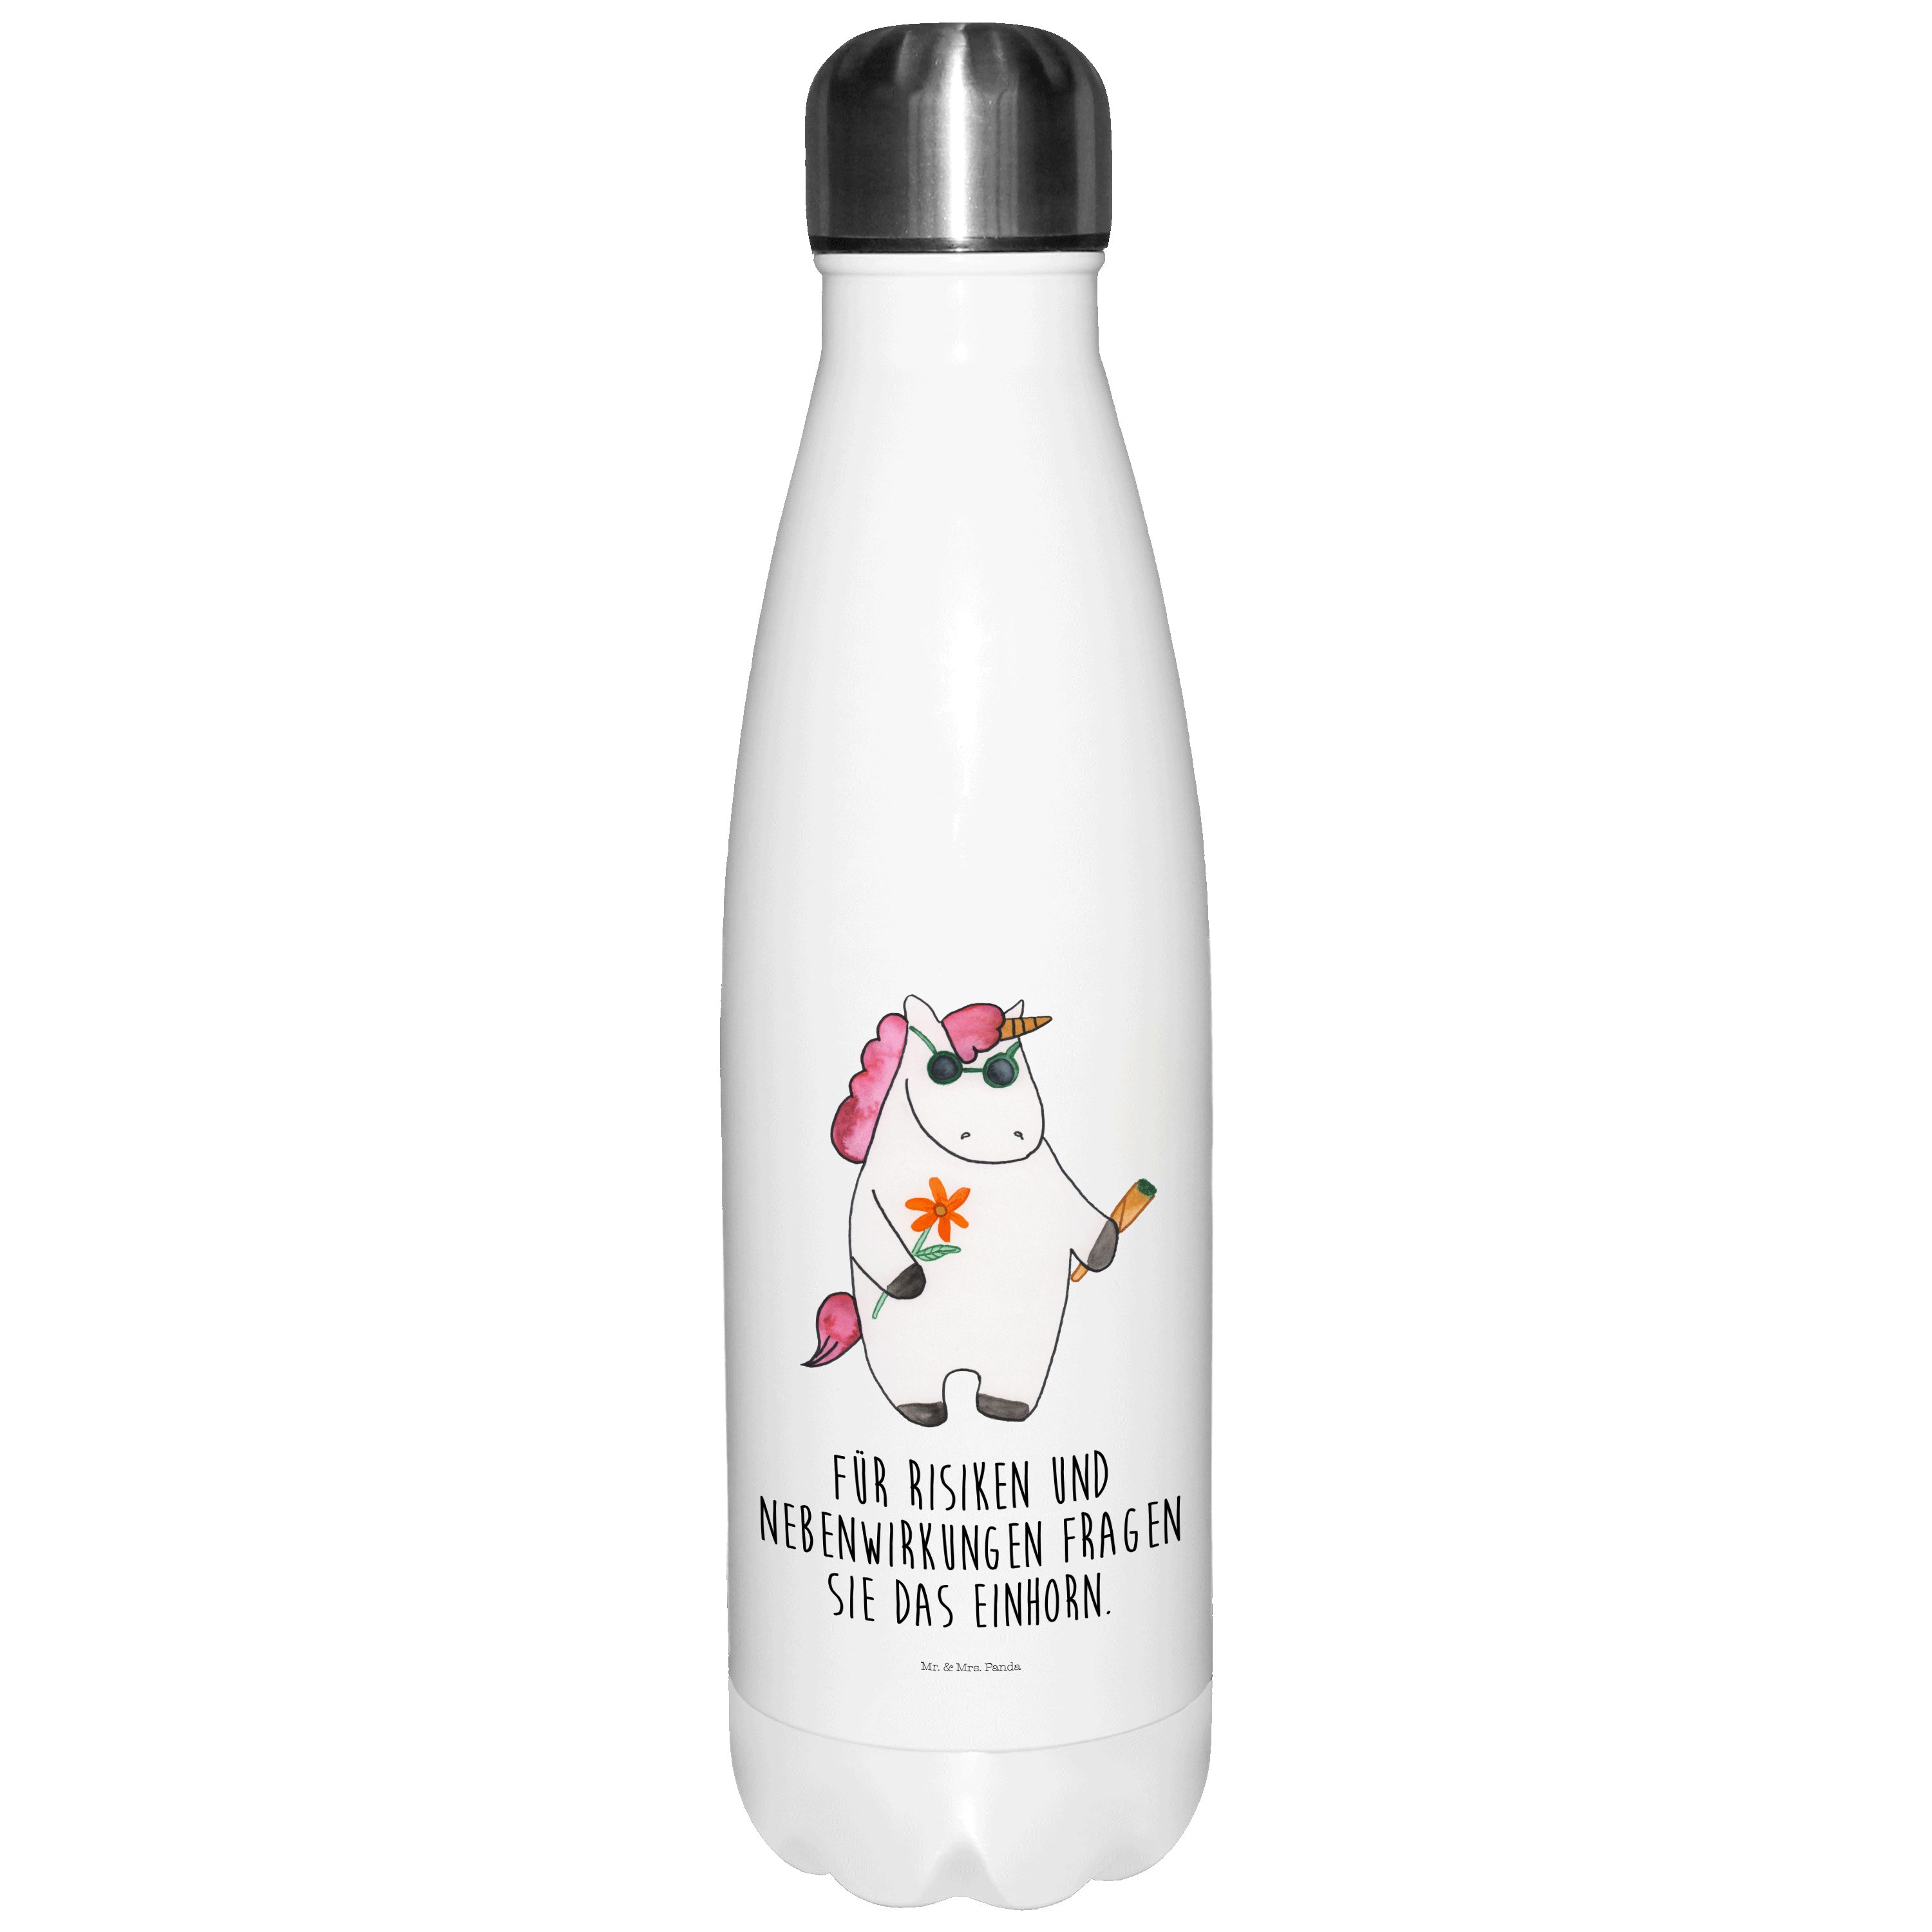 Mr. & Mrs. Panda Thermoflasche Einhorn Woodstock - Weiß - Geschenk, Isolierflasche, Einhorn Deko, Pa, Motivierende Sprüche